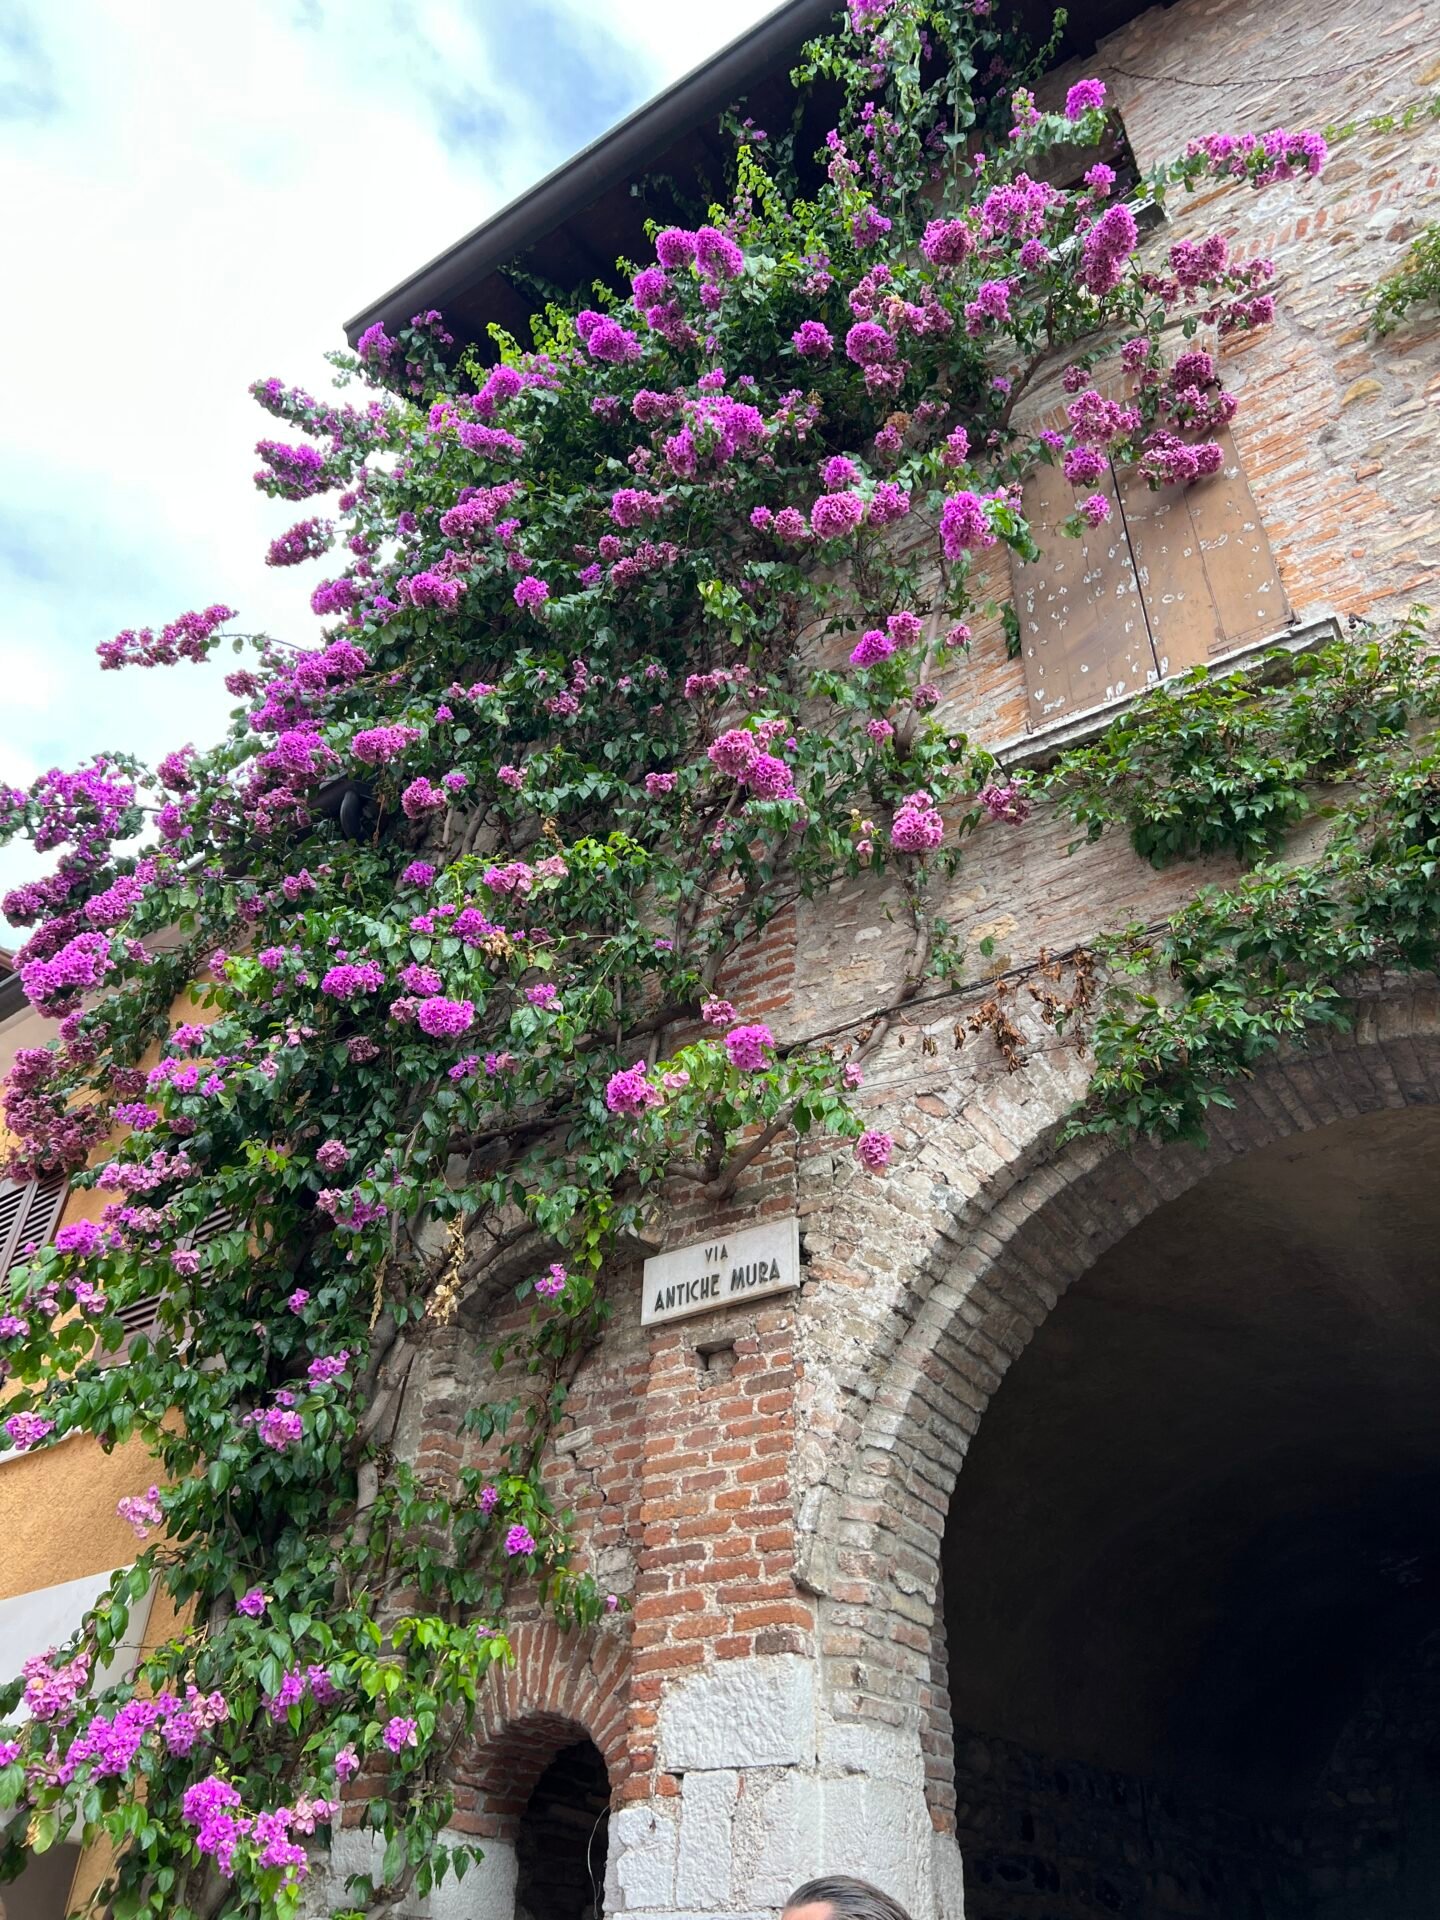 Une autre glycine, un peu moins impressionnante en nombre de fleurs monte sur le côté d'un bâtiment qui marque l'entrée d'un passage couvert dans la vieille ville de Sirmione